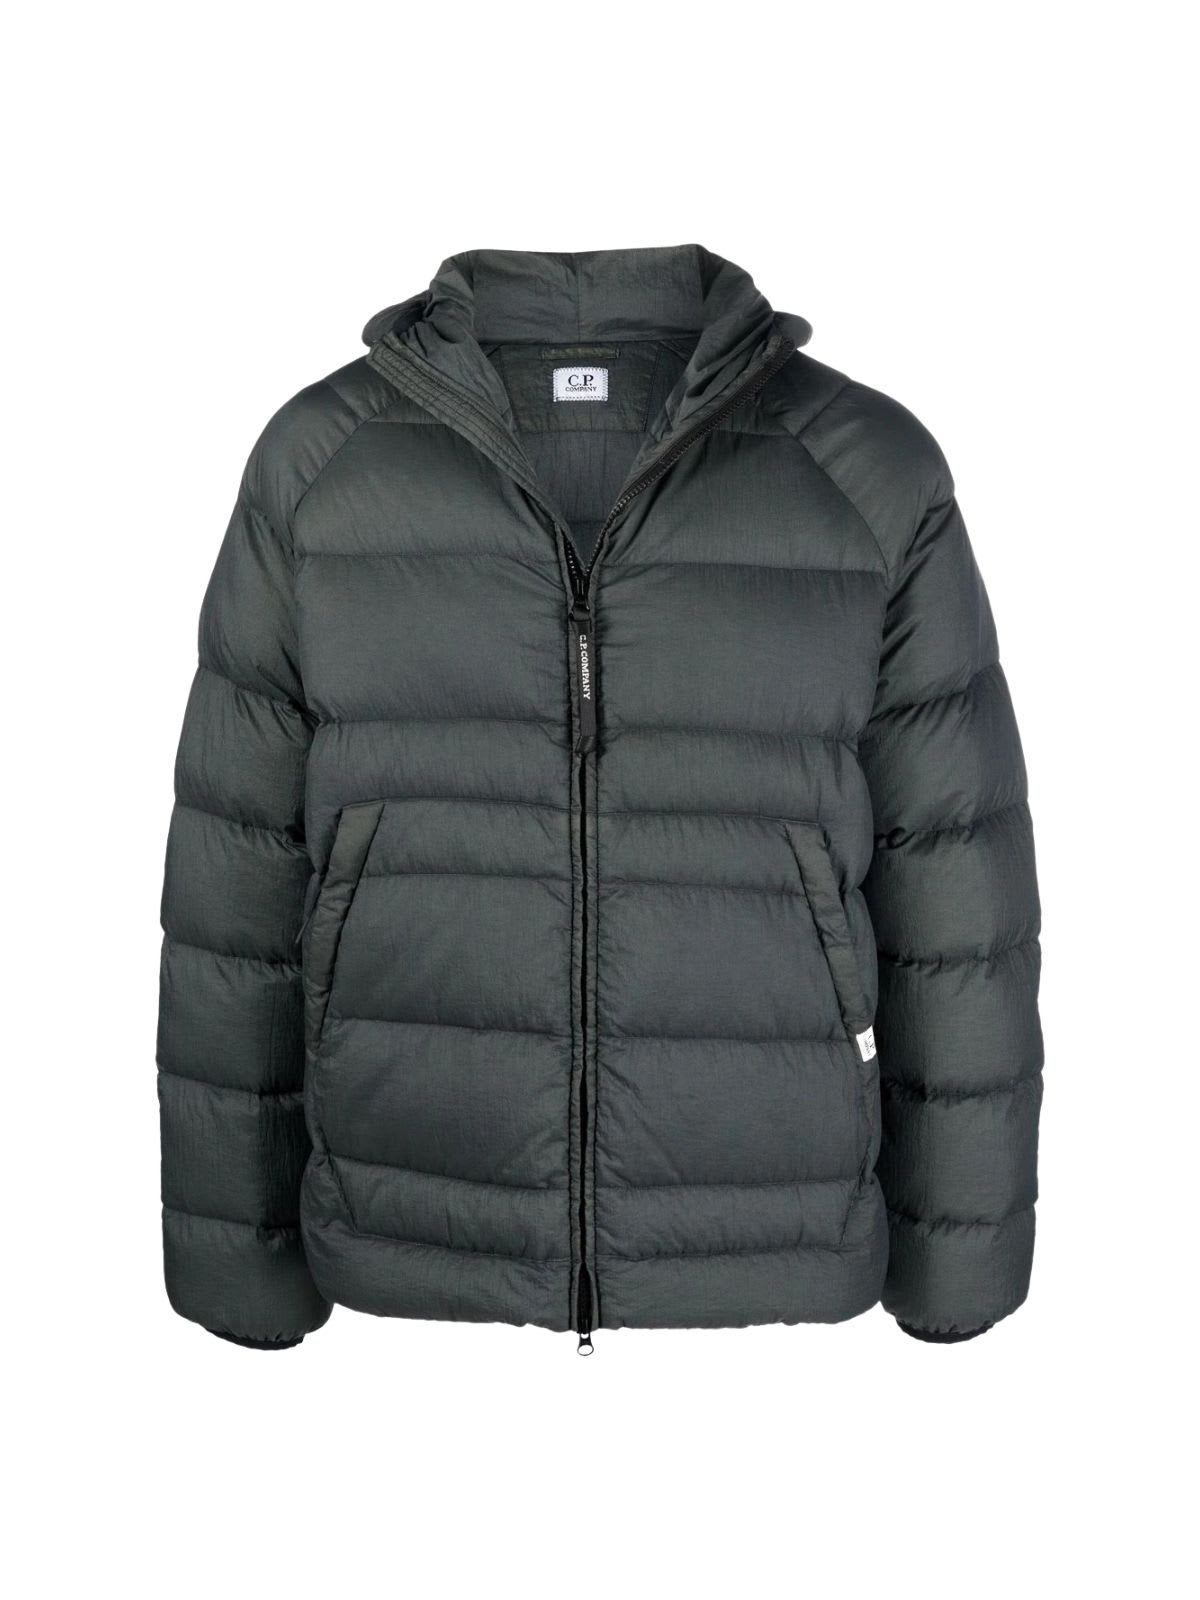 C.P. Company Nylon Hooded Liner Jacket